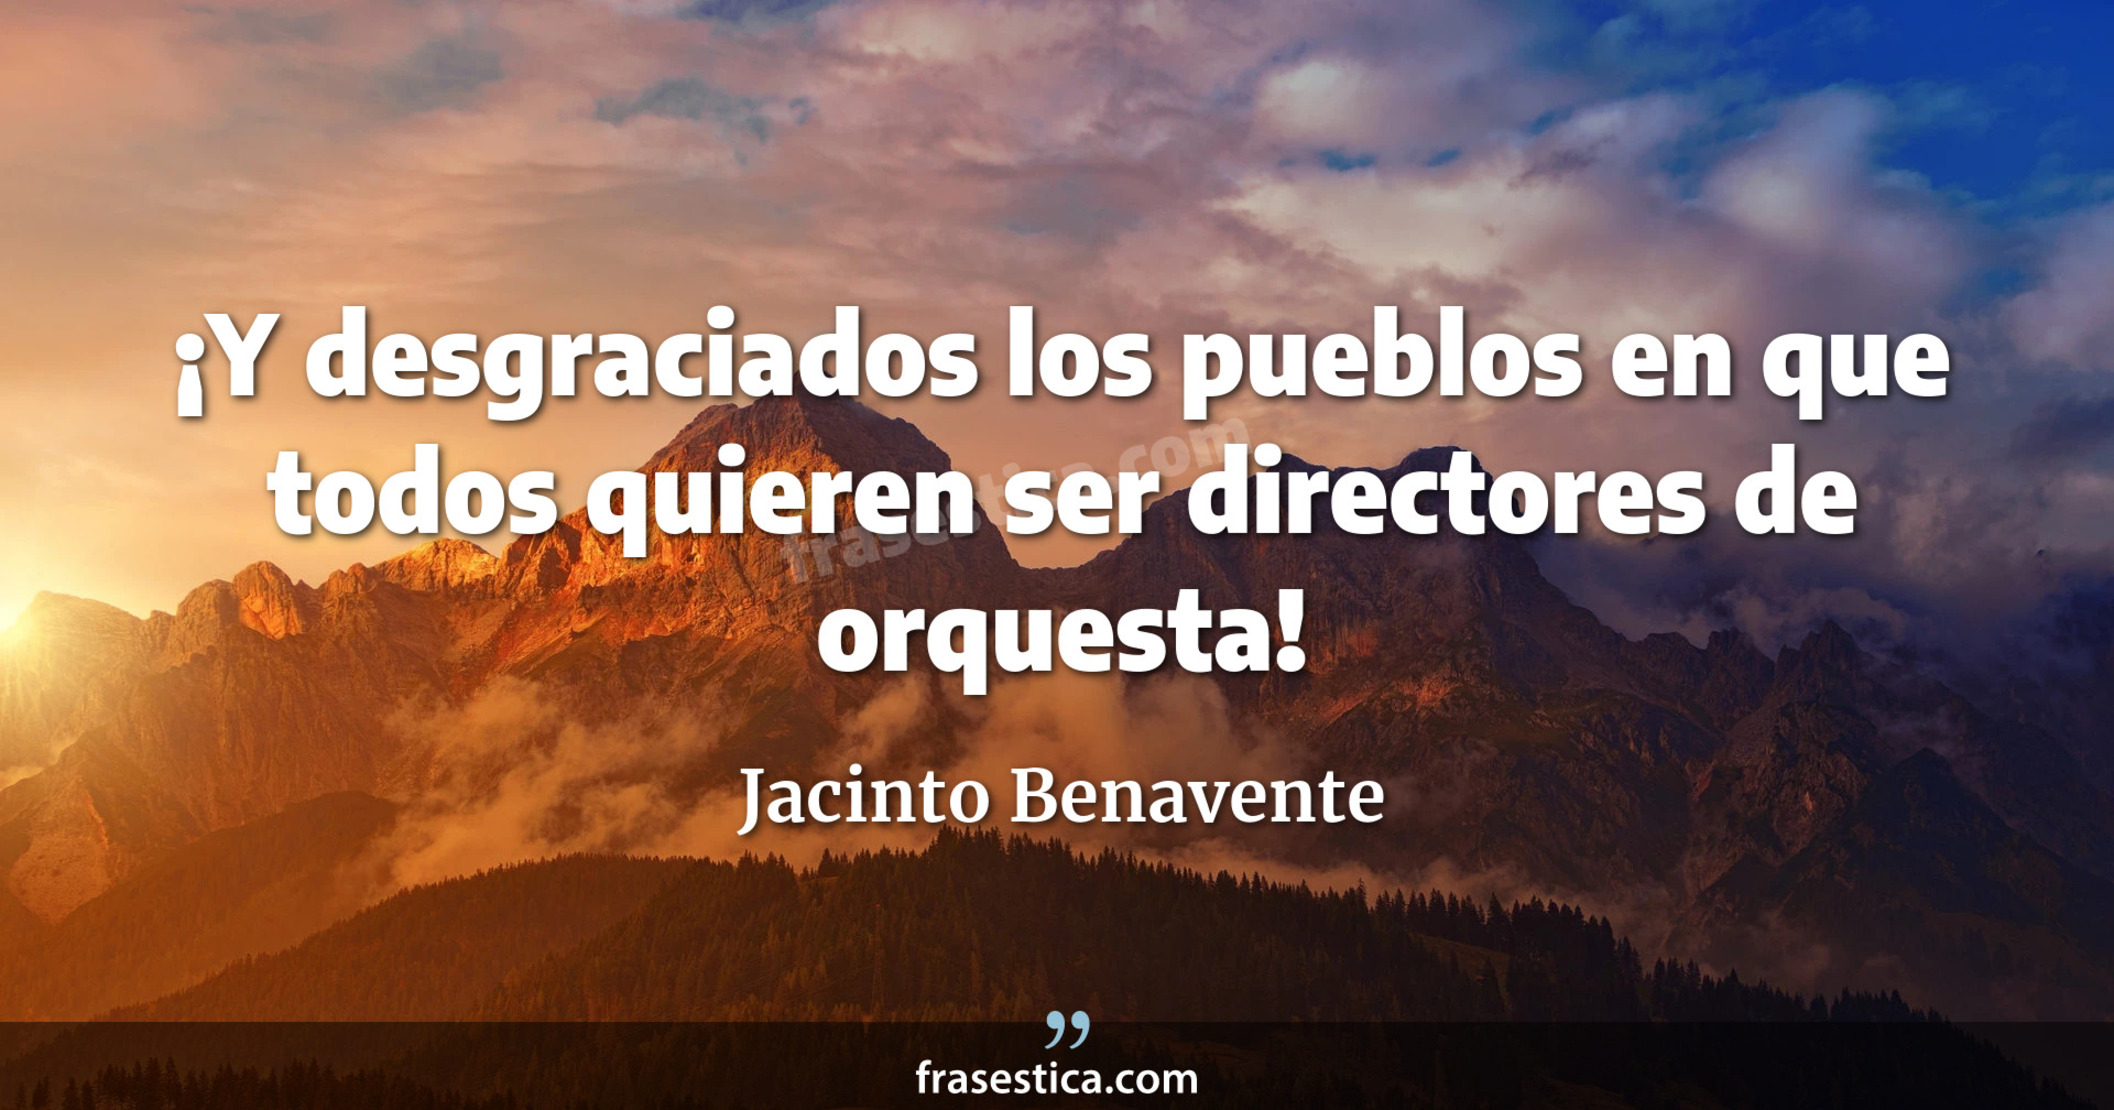 ¡Y desgraciados los pueblos en que todos quieren ser directores de orquesta! - Jacinto Benavente